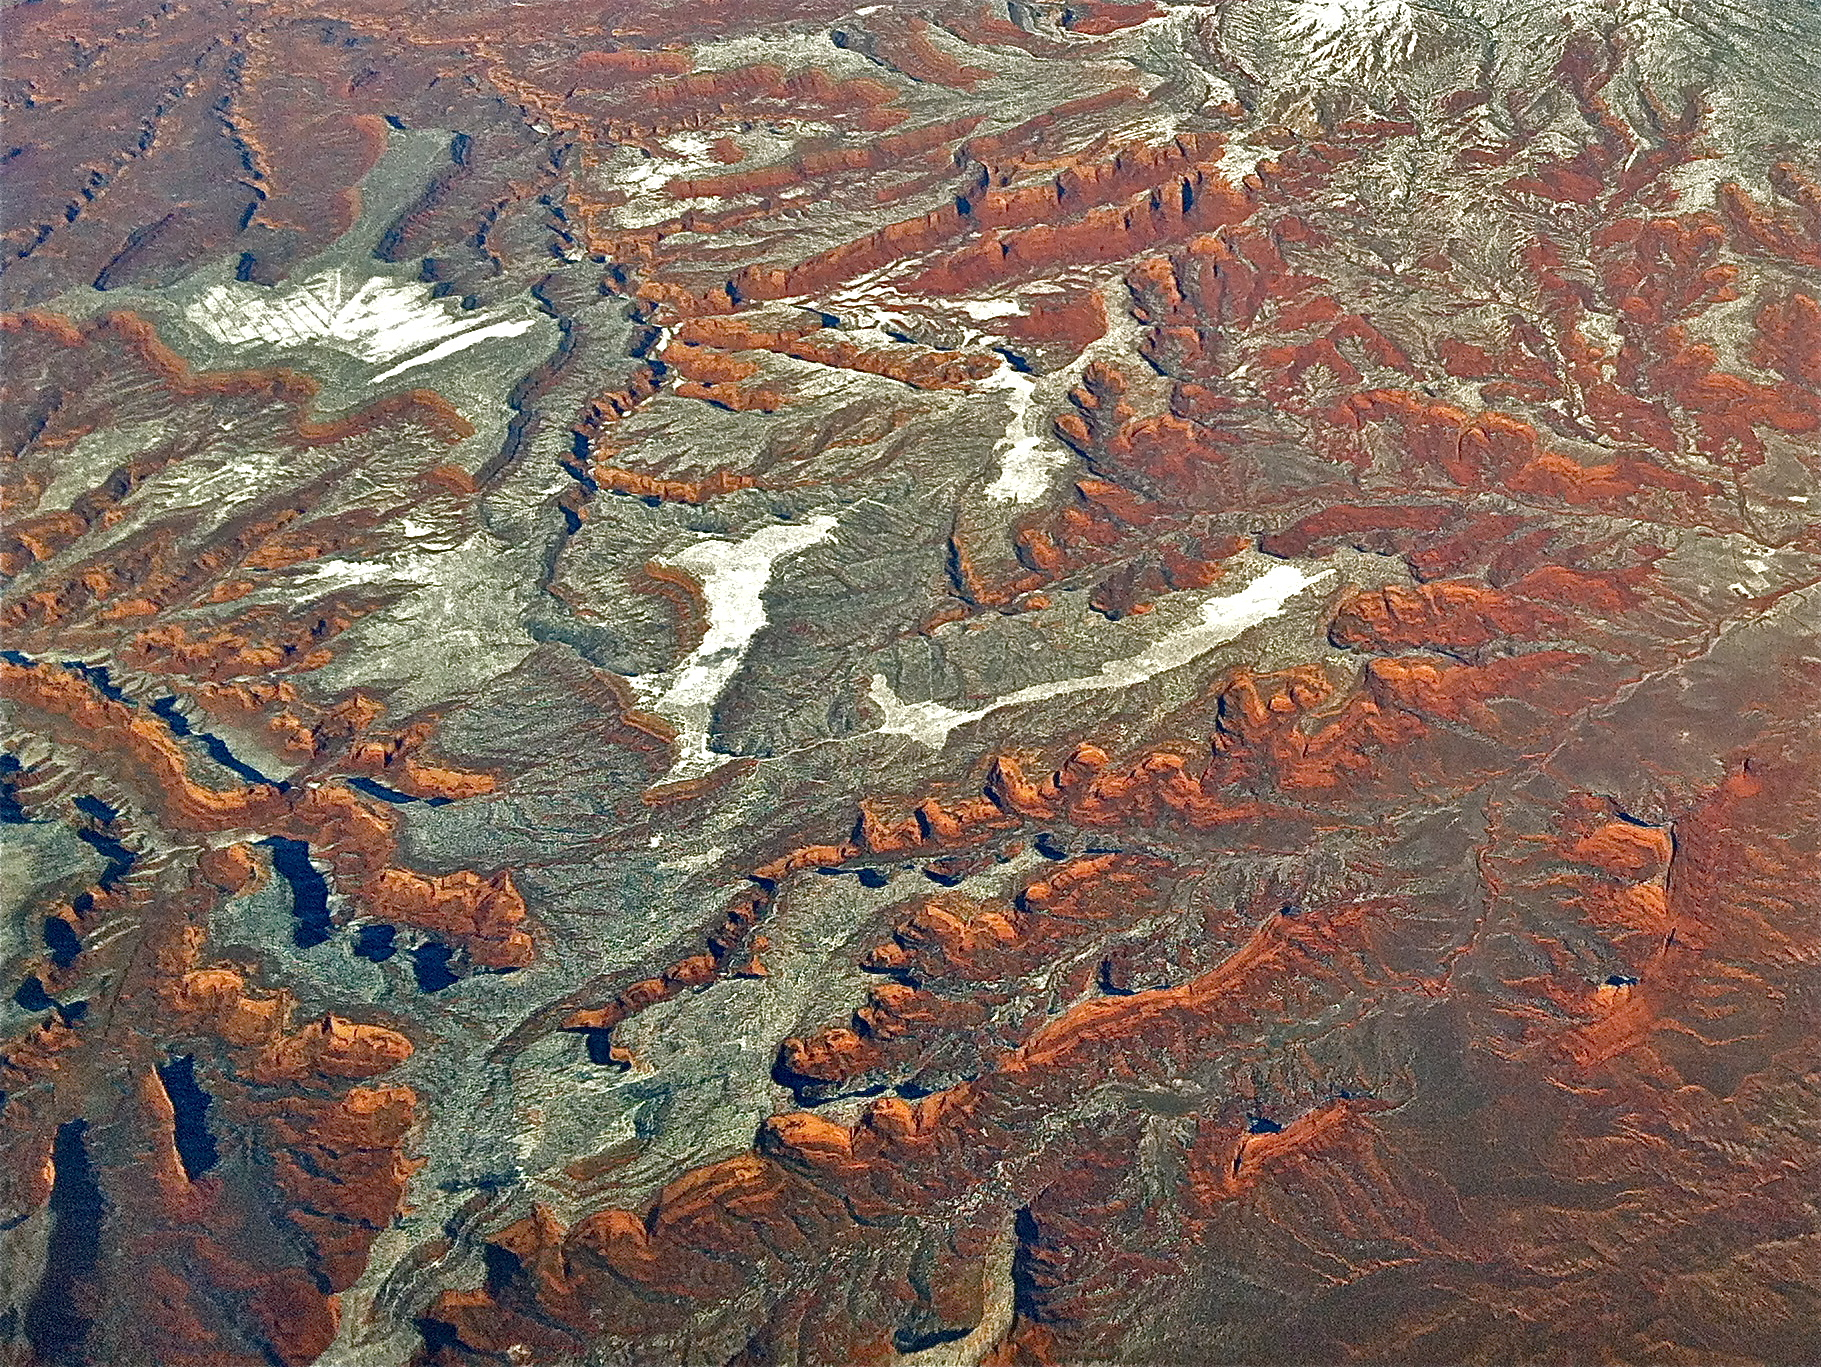 Lukachukai Mountains, Arizona Aerial